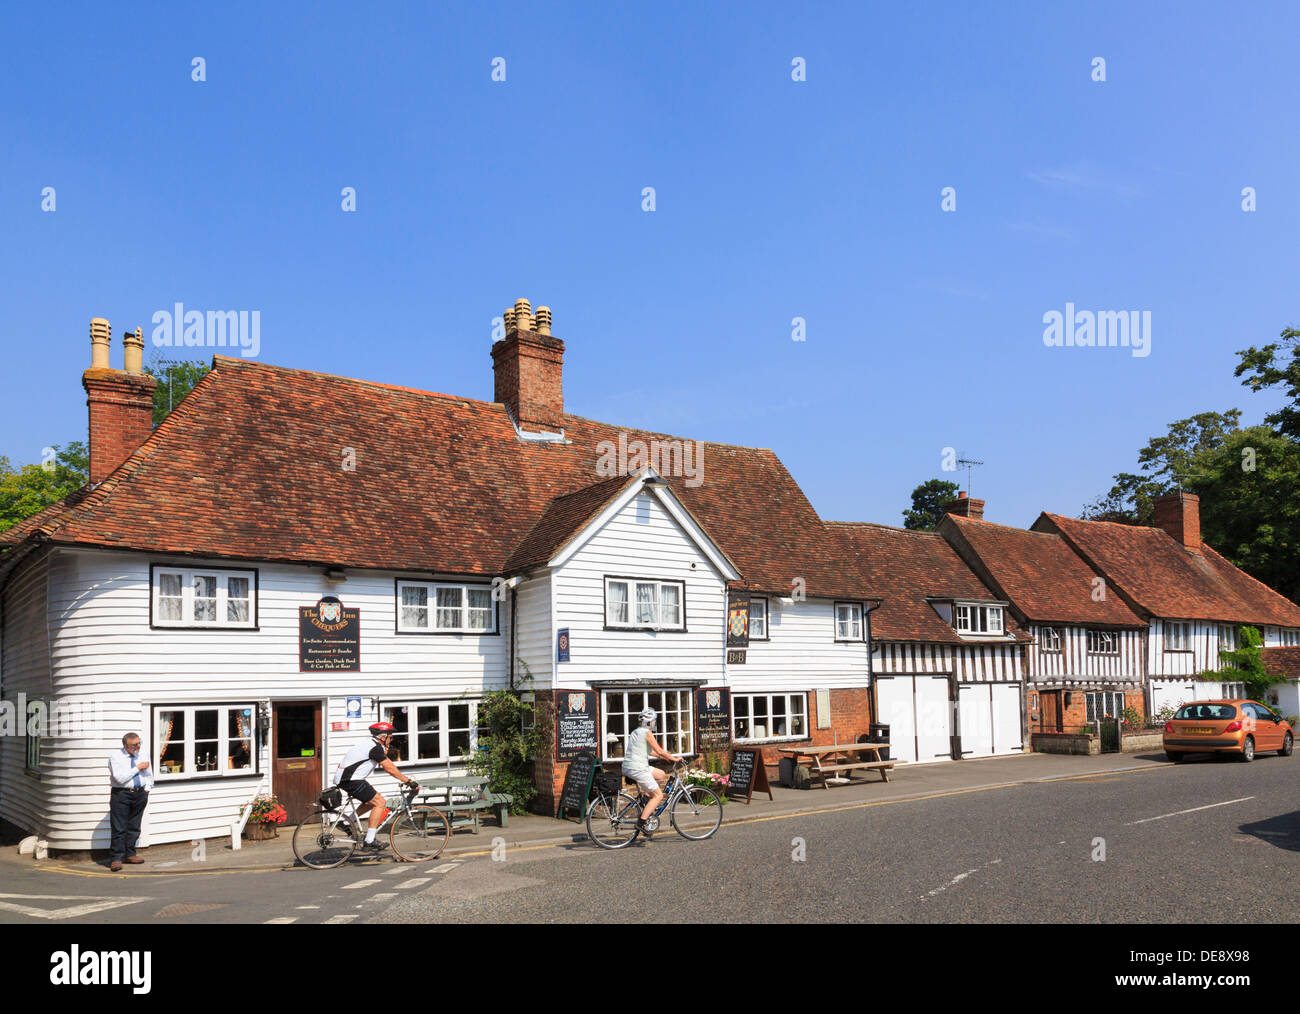 Les cyclistes à l'extérieur du Checkrs Inn, ancien pub du XIVe siècle de l'auberge de coaching dans le pittoresque village anglais. The Street Smarden Kent Angleterre Royaume-Uni Banque D'Images